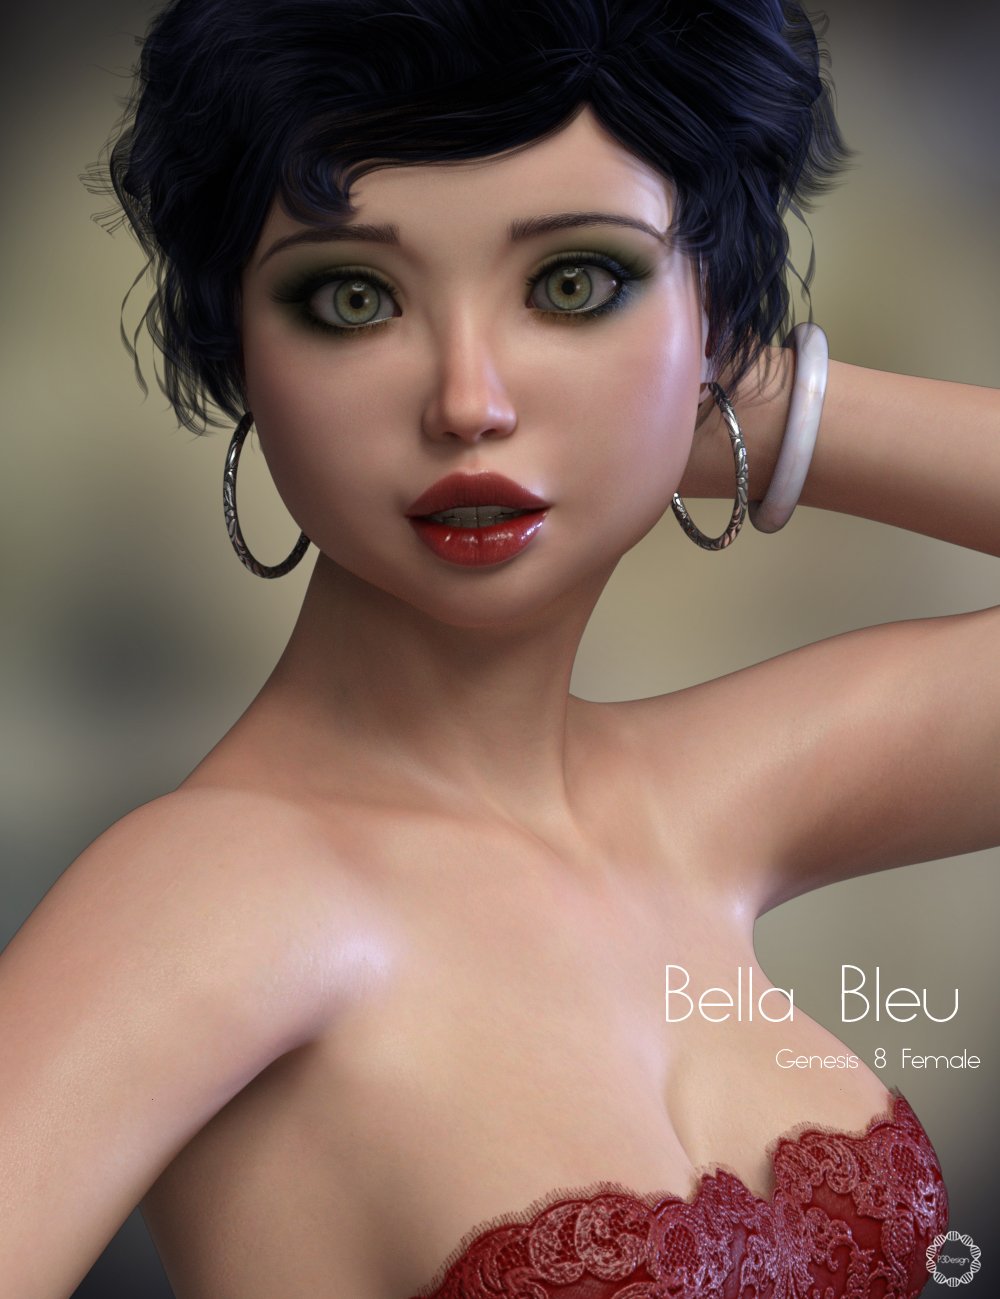 P3D Bella Bleu for Genesis 8 Female by: P3Design, 3D Models by Daz 3D